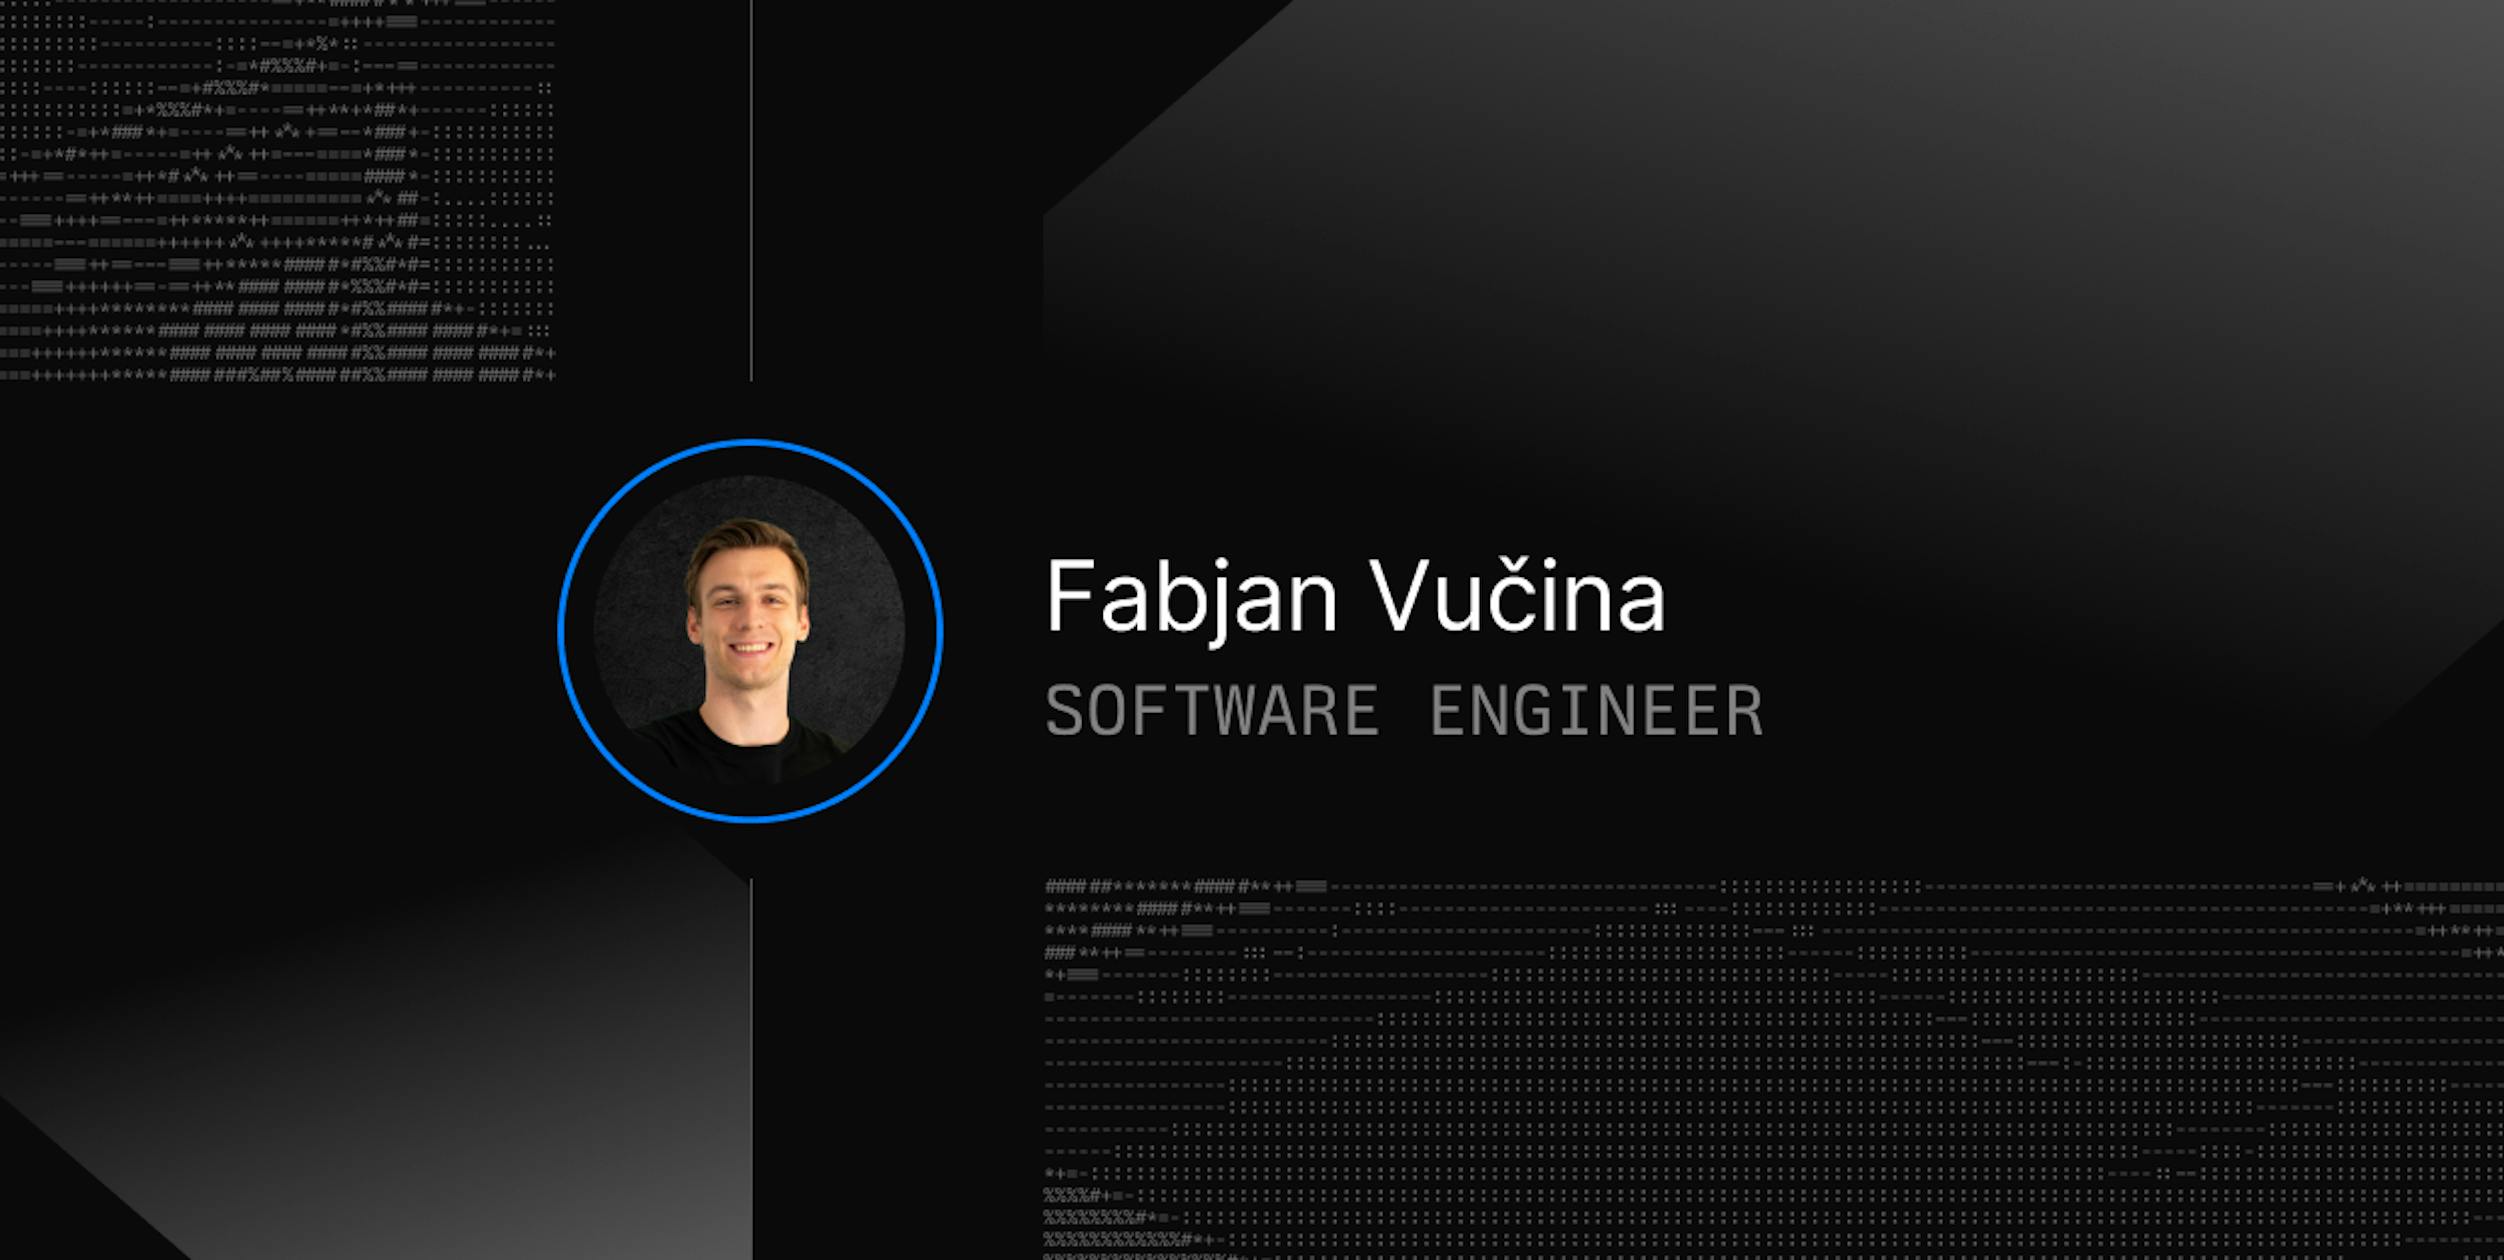 Fabjan Vucina, software engineer at Daytona